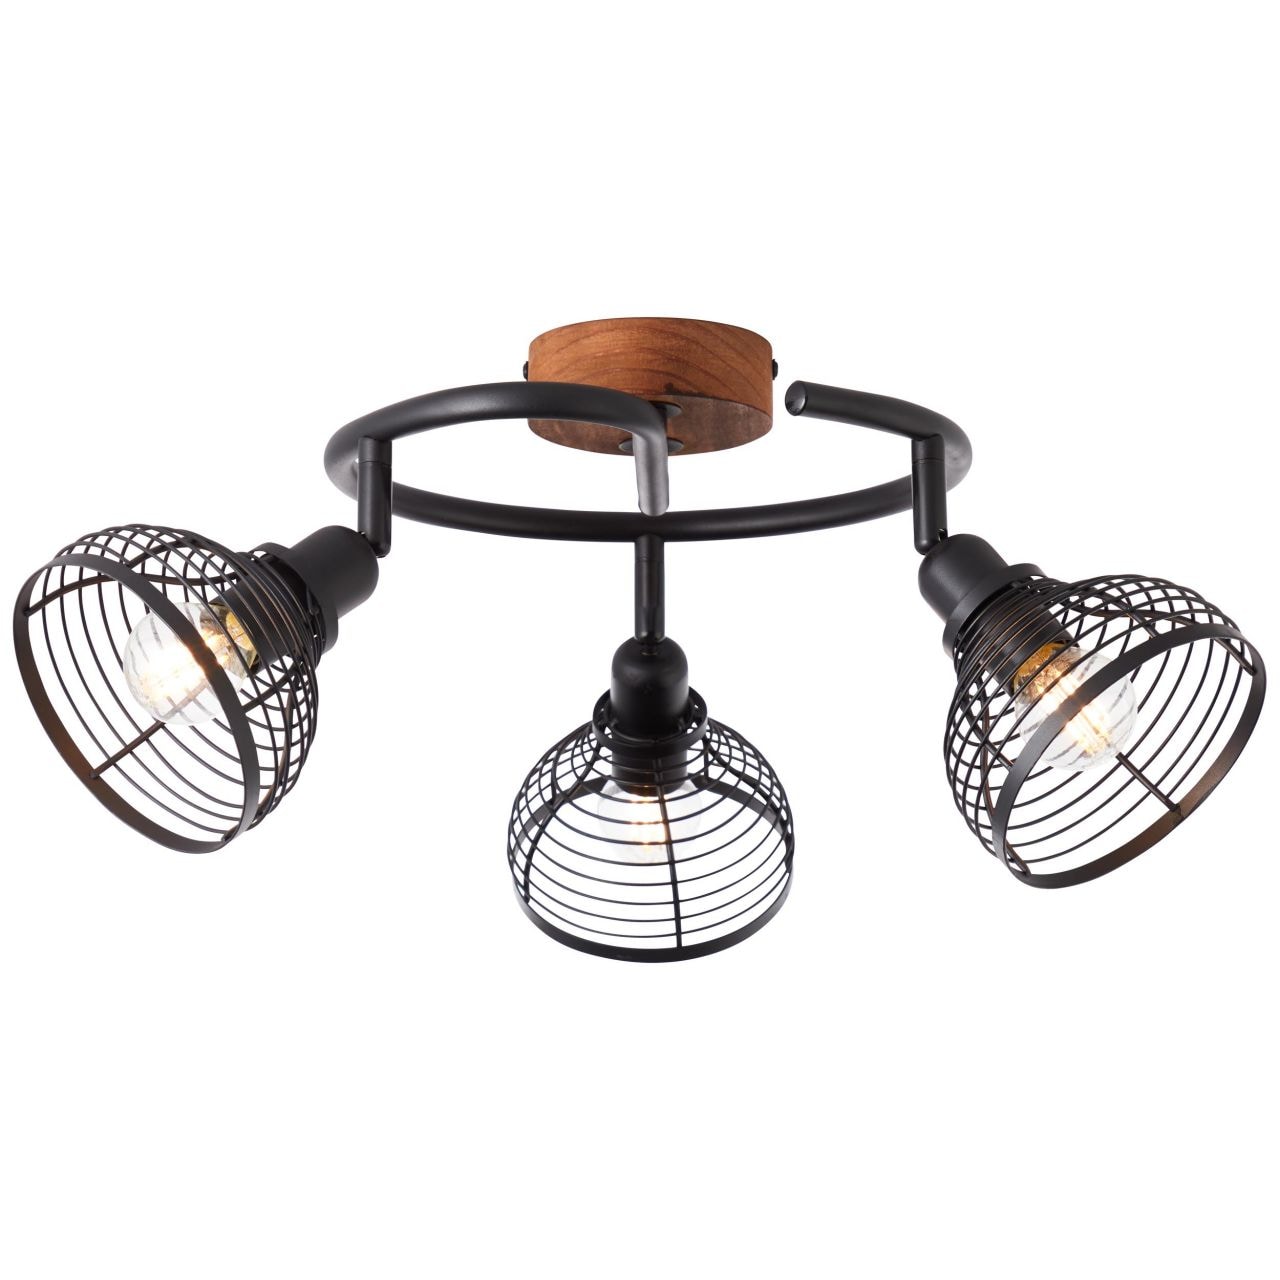 BRILLIANT Lampe, Avia Spotspirale 3flg schwarz/holzfarbend, Metall/Holz, 3x D45, E14, 40W,Tropfenlampen (nicht enthalten